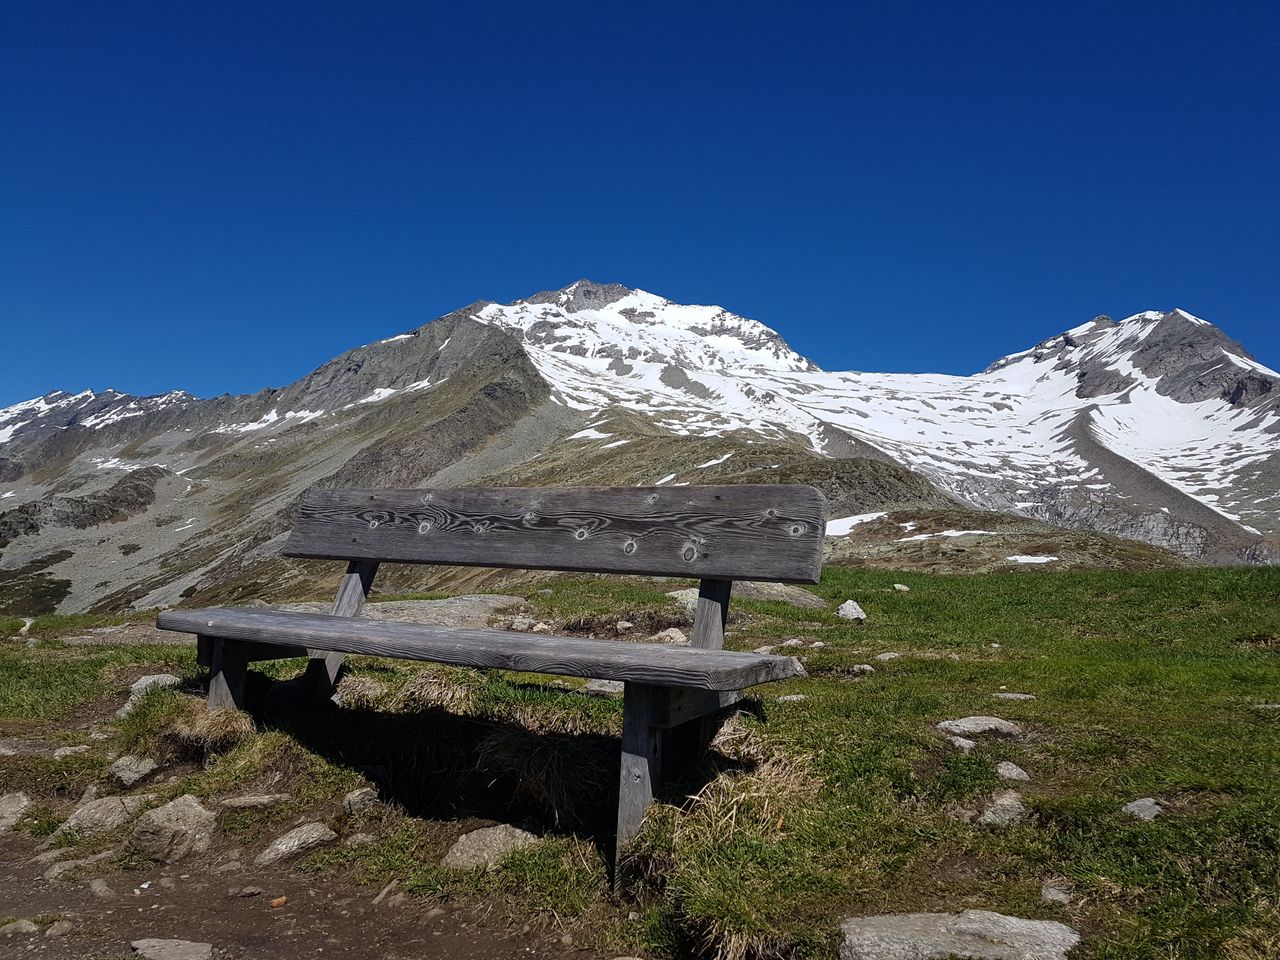 Sommer in Tirol - 8 Tage bei Mayrhofen